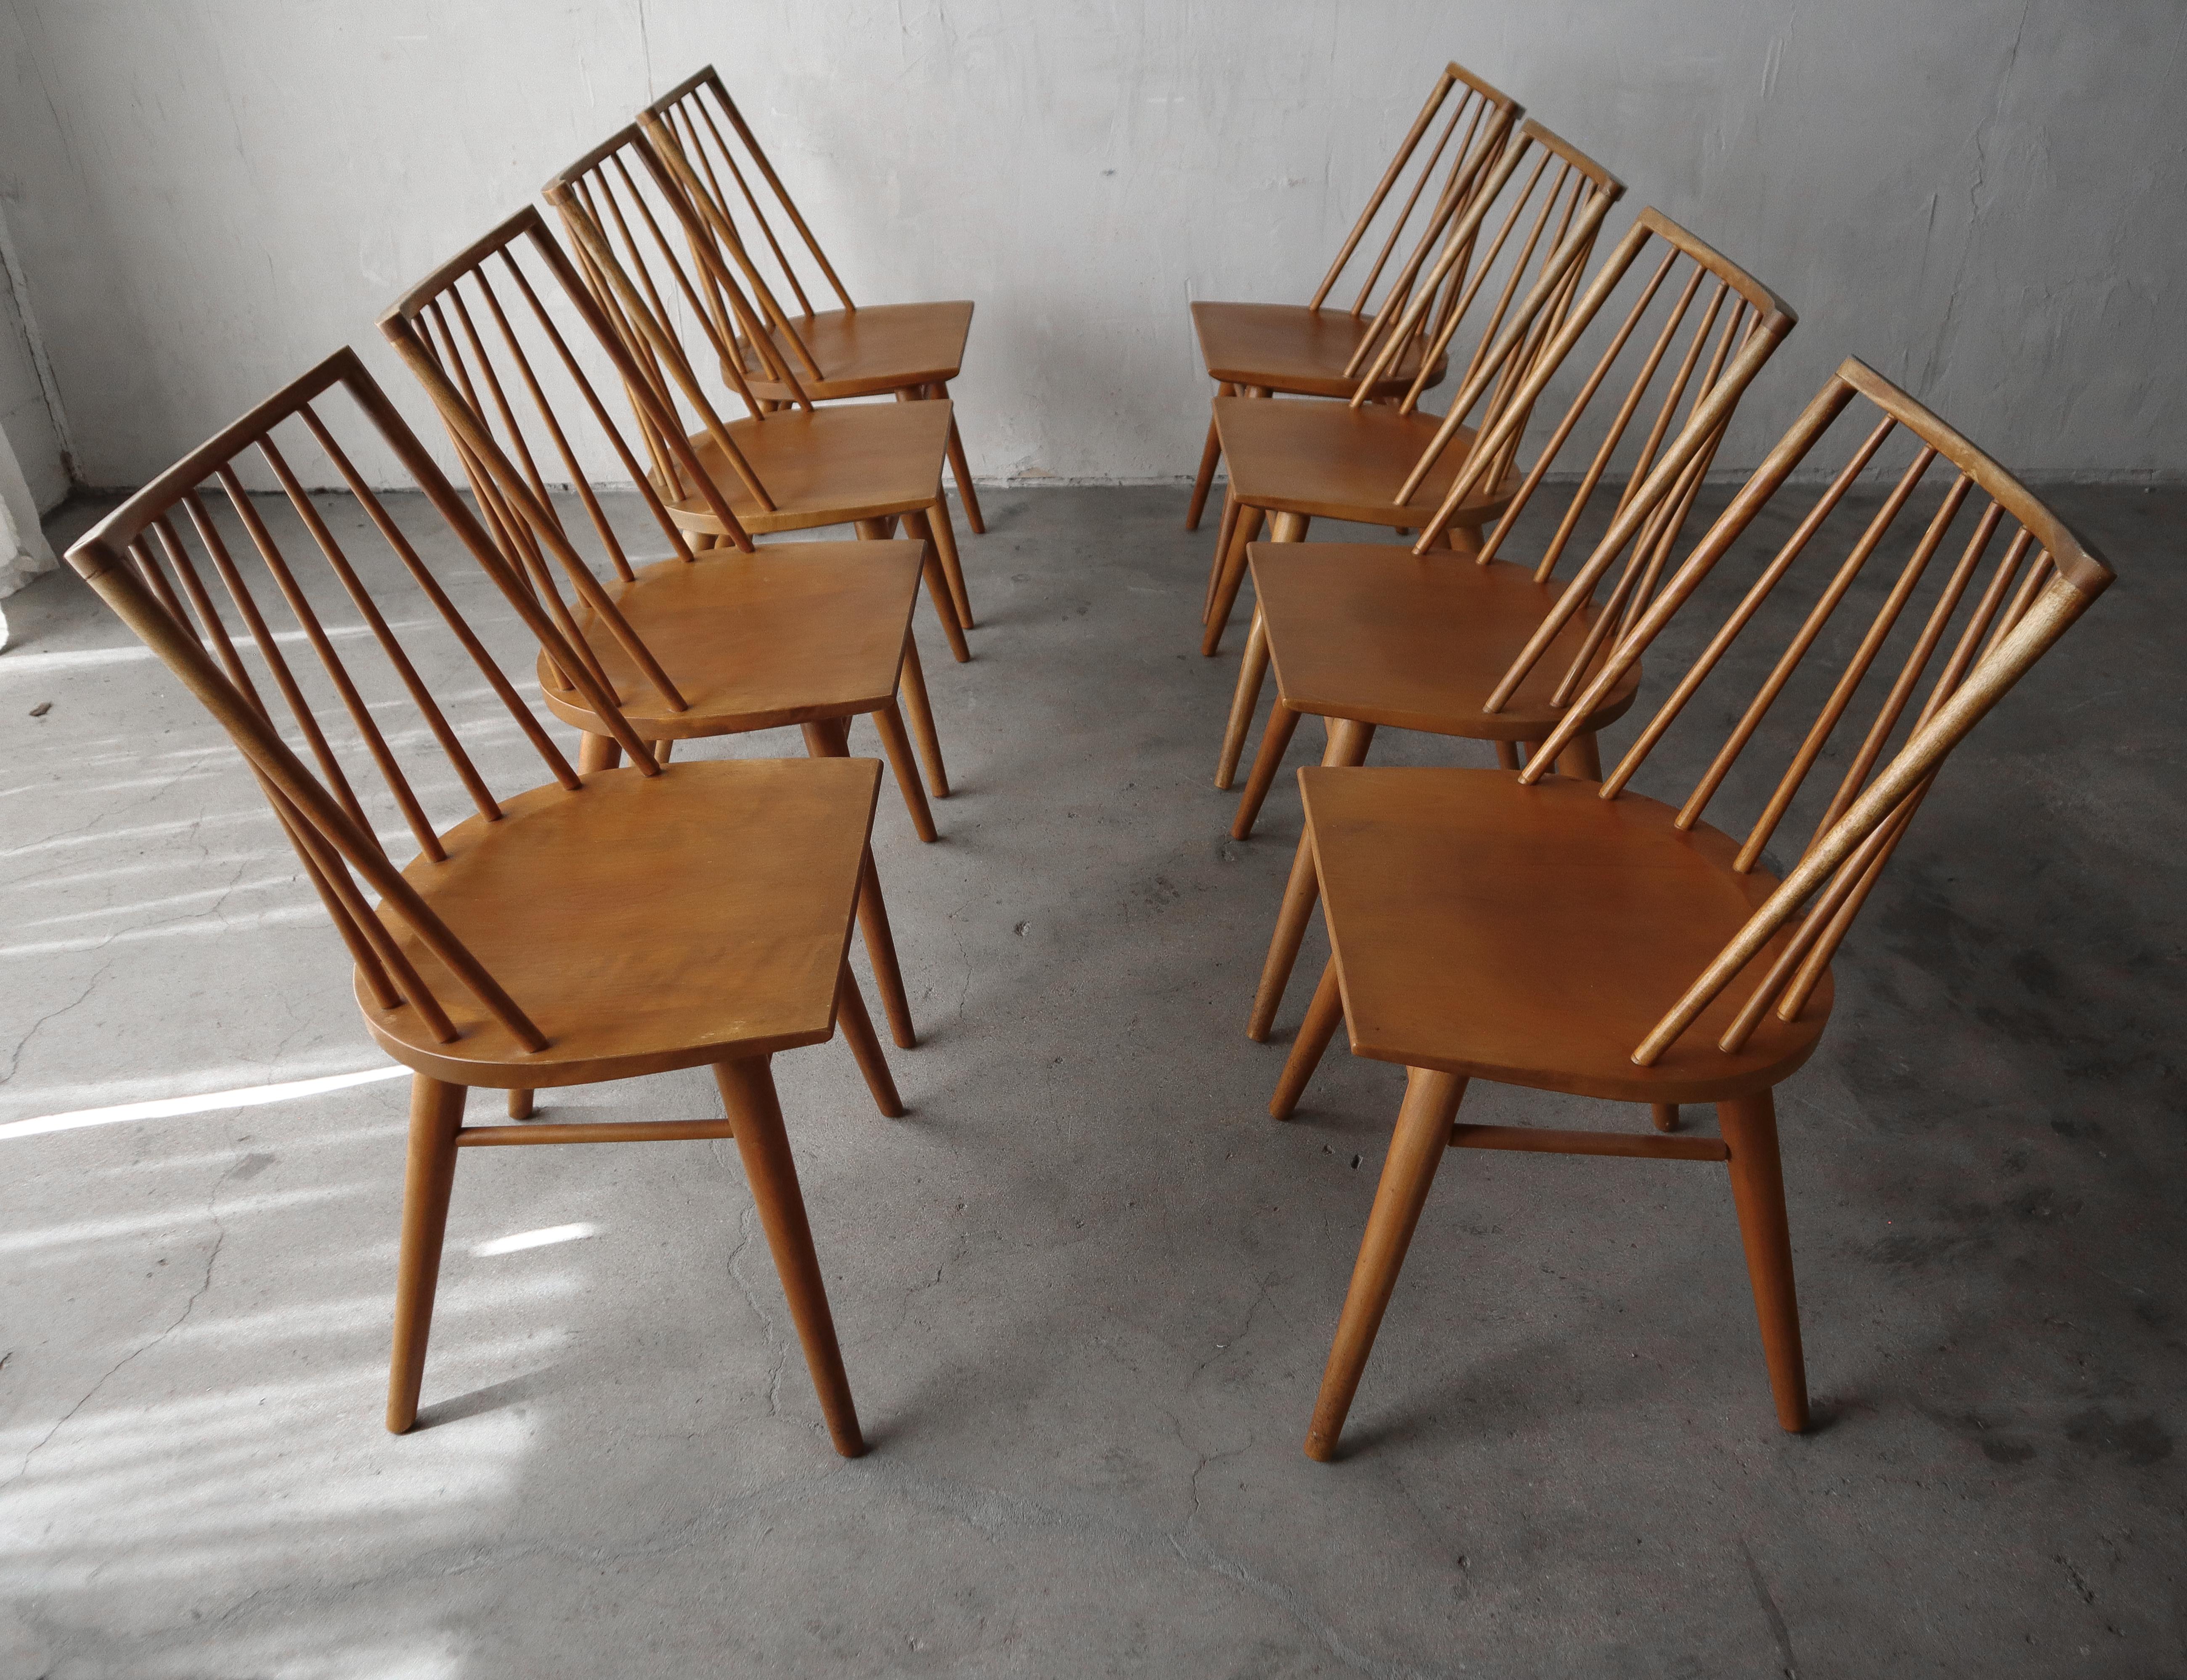 Magnifique ensemble de 8 chaises de salle à manger à dossier en fuseau du milieu du siècle par Conant Ball. Ces chaises ont un design très épuré et minimaliste, leur construction en érable massif les rend à la fois élégantes et durables.

Les